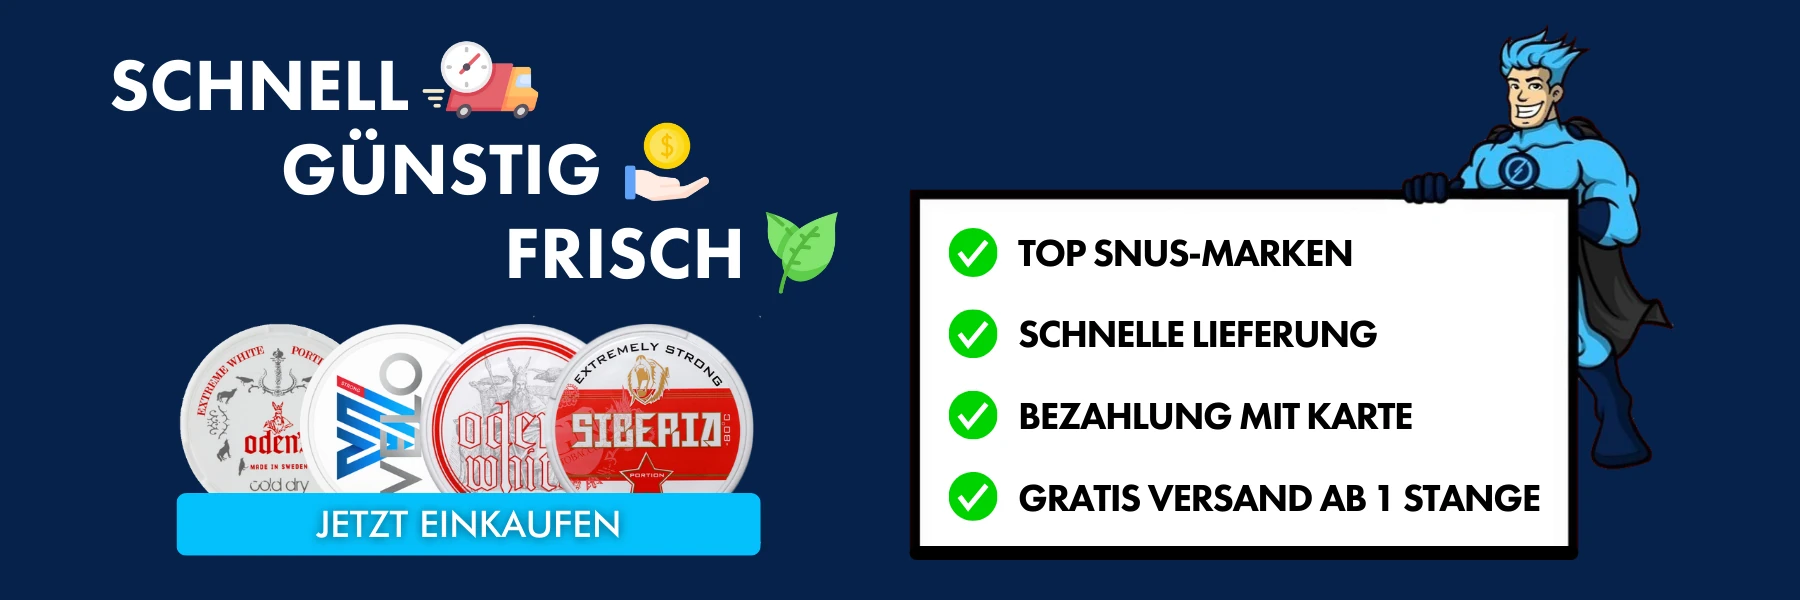 Snushero.de dein snus online shop in Deutschland